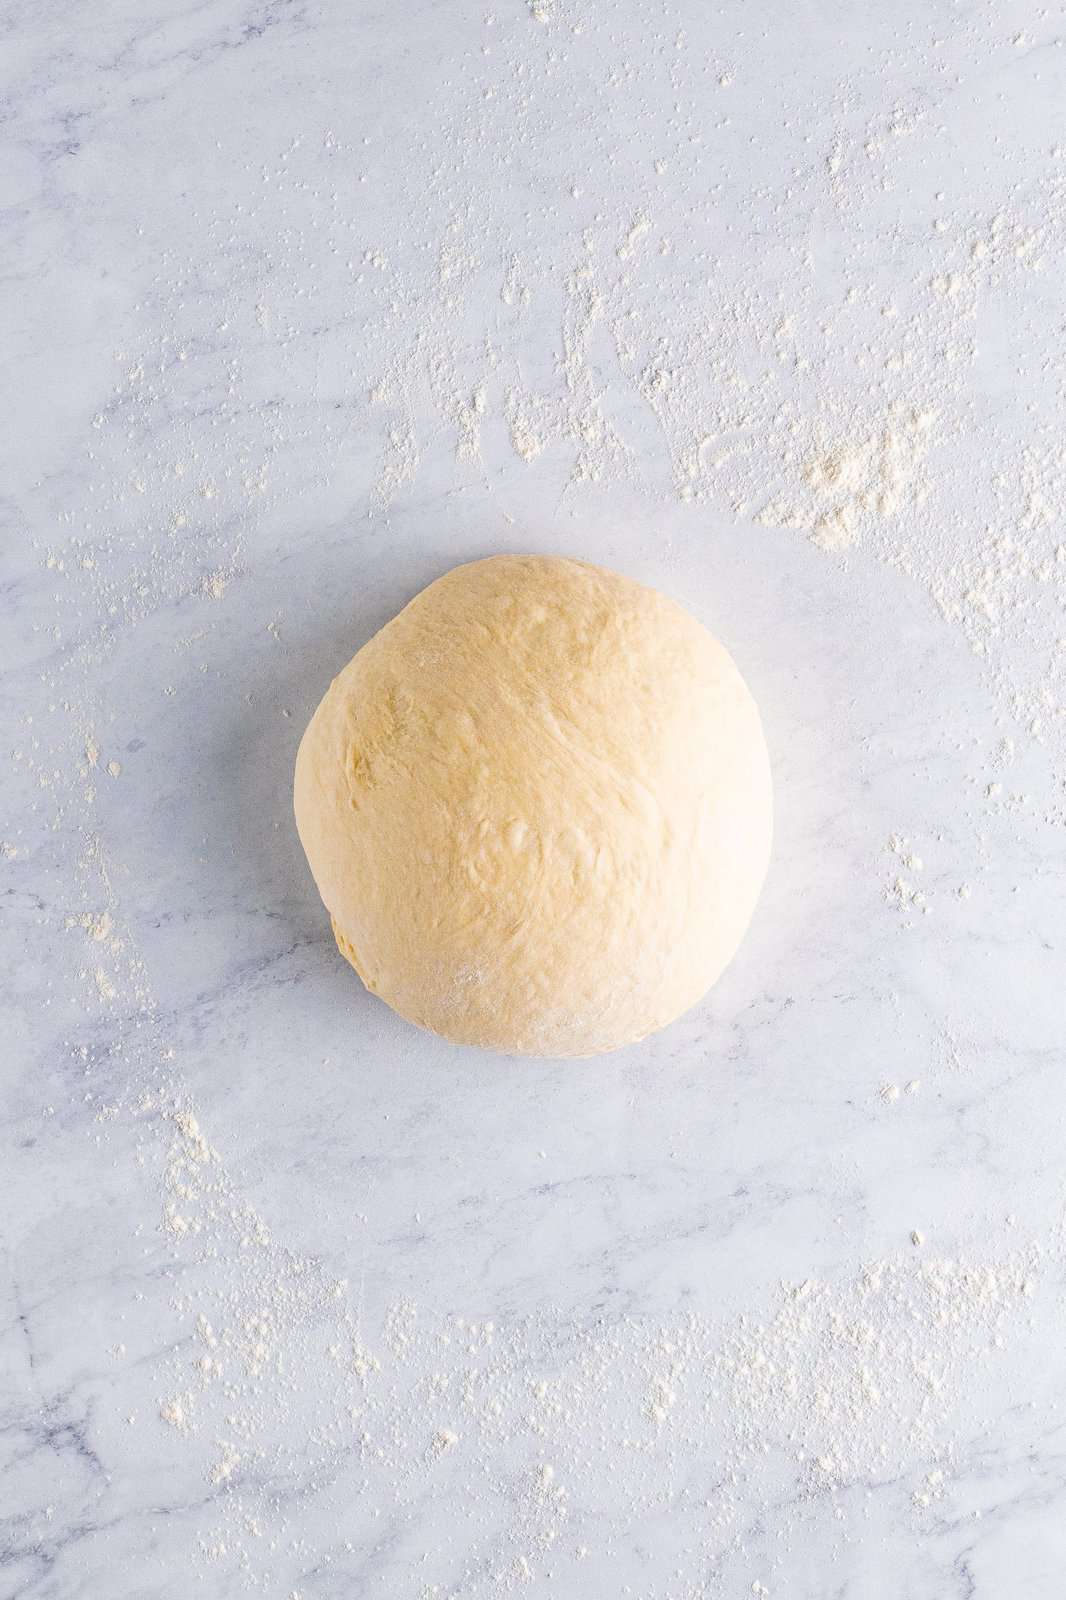 Kneaded dough on floured surface.